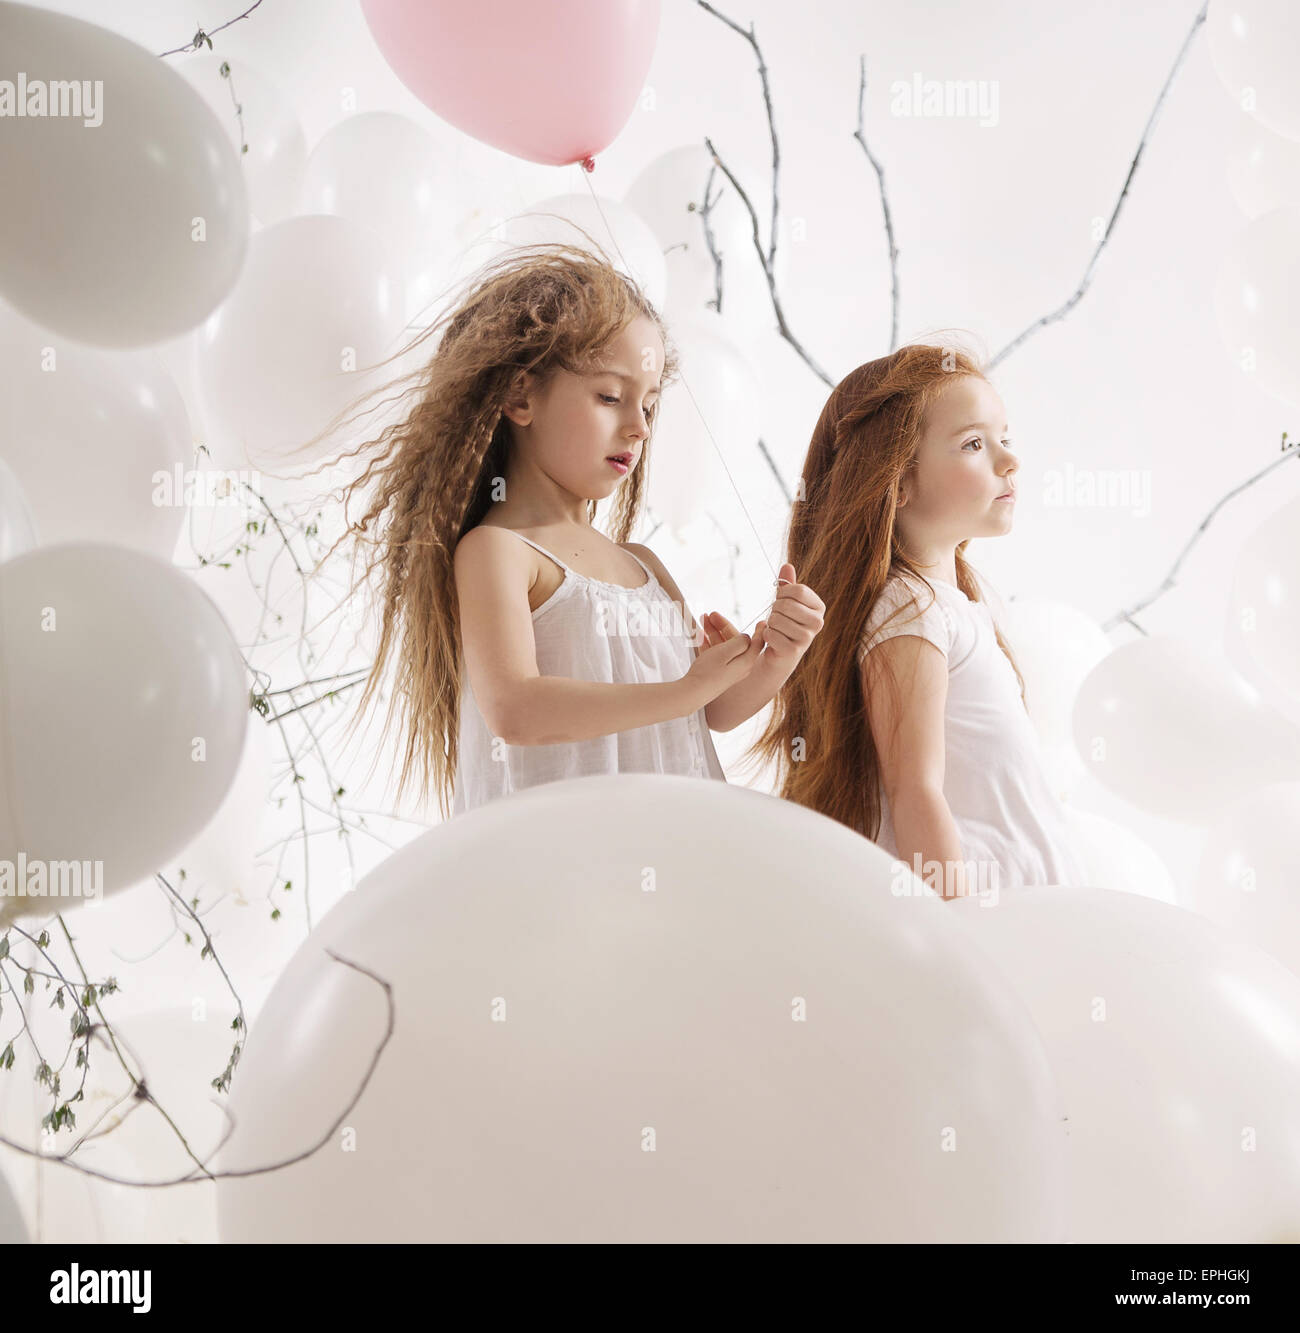 Deux petites filles parmi les ballons Banque D'Images